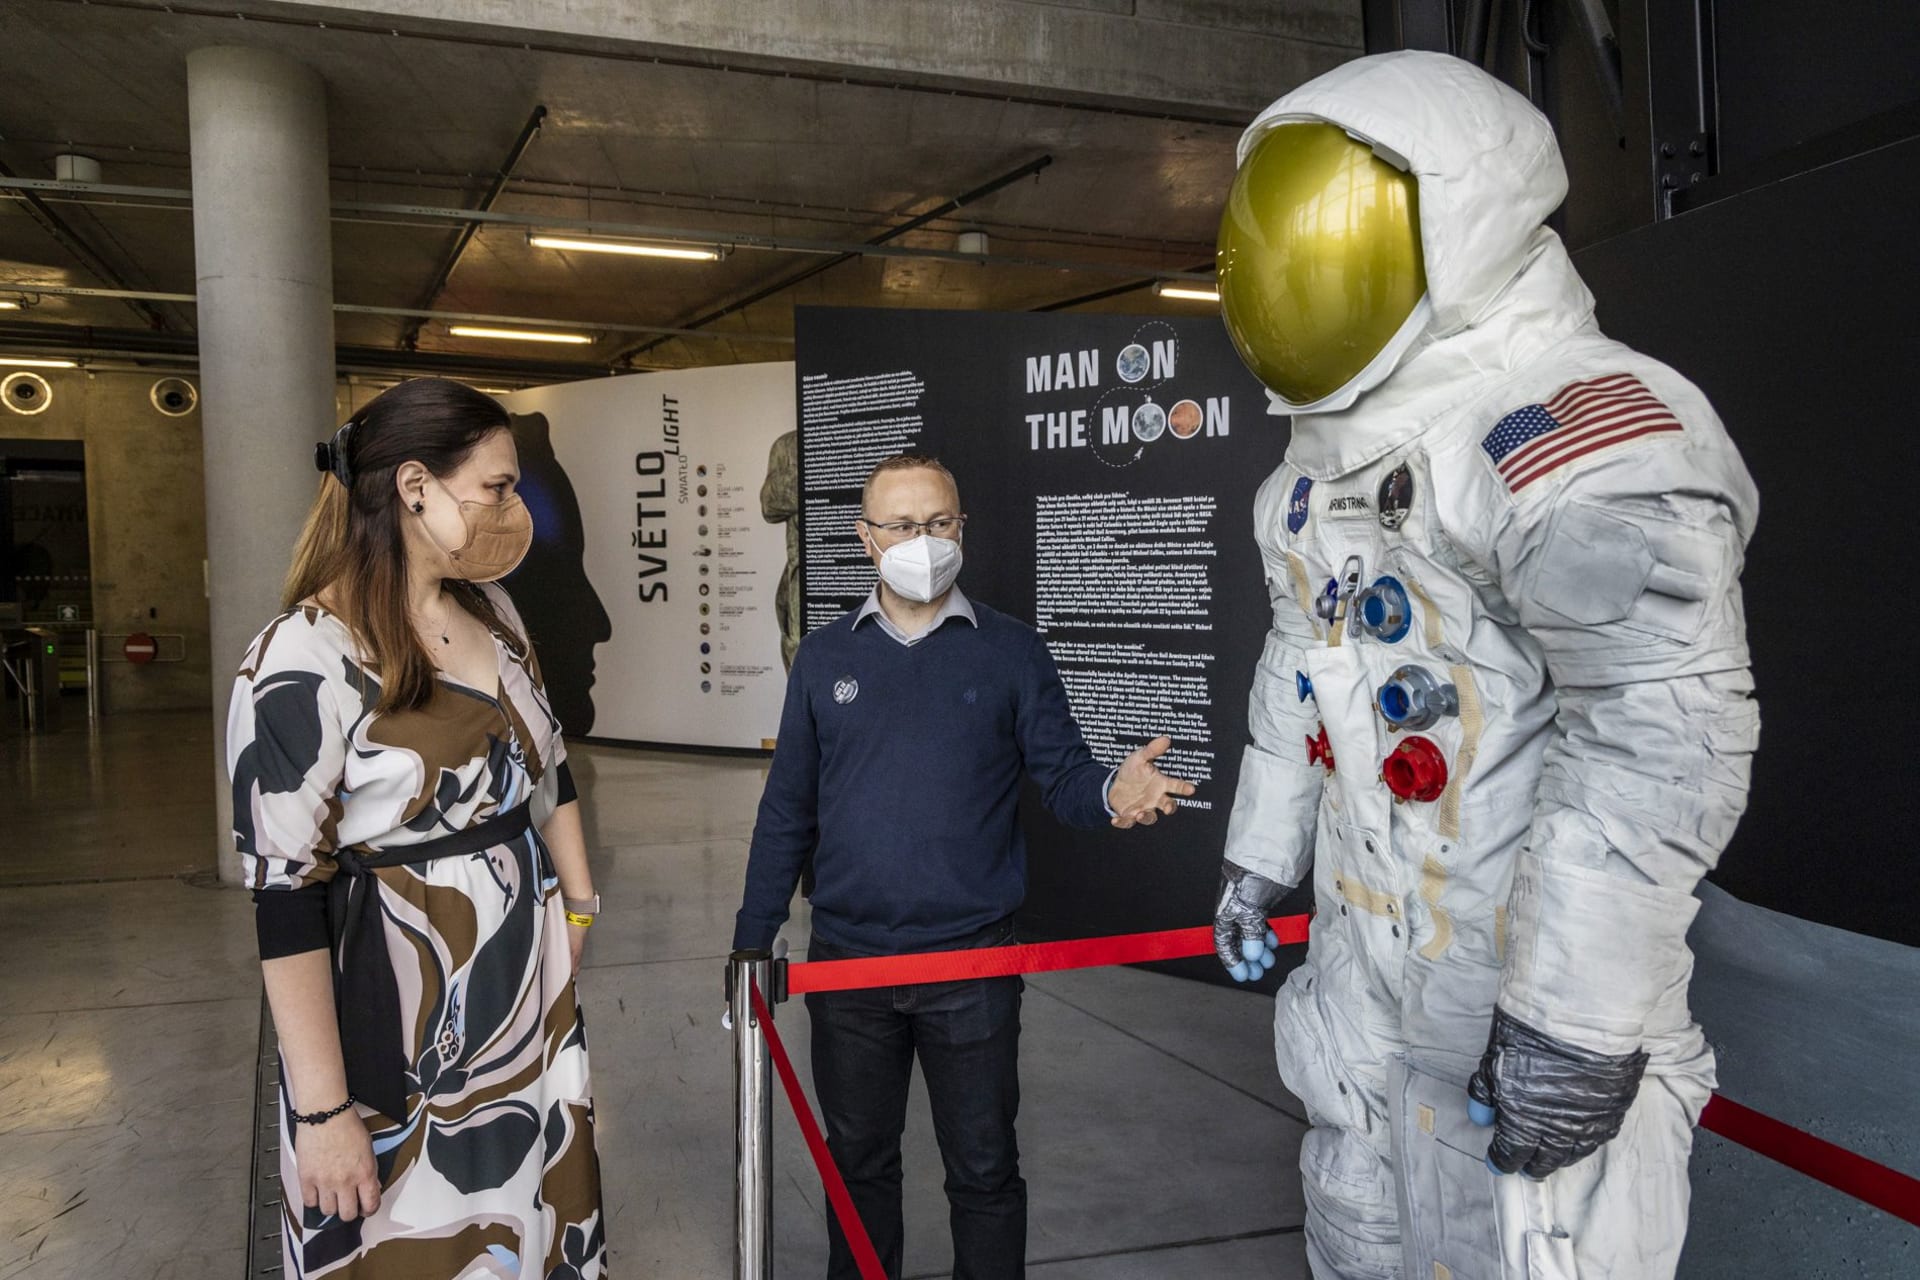 Premiérově v Česku, i v Ostravě, je k vidění replika skafandru prvního člověka na Měsíci Neila Armstronga. Nachází se na interaktivní interaktivní výstavě Svět civilizace a Man on the Moon (Muž na Měsíci). 